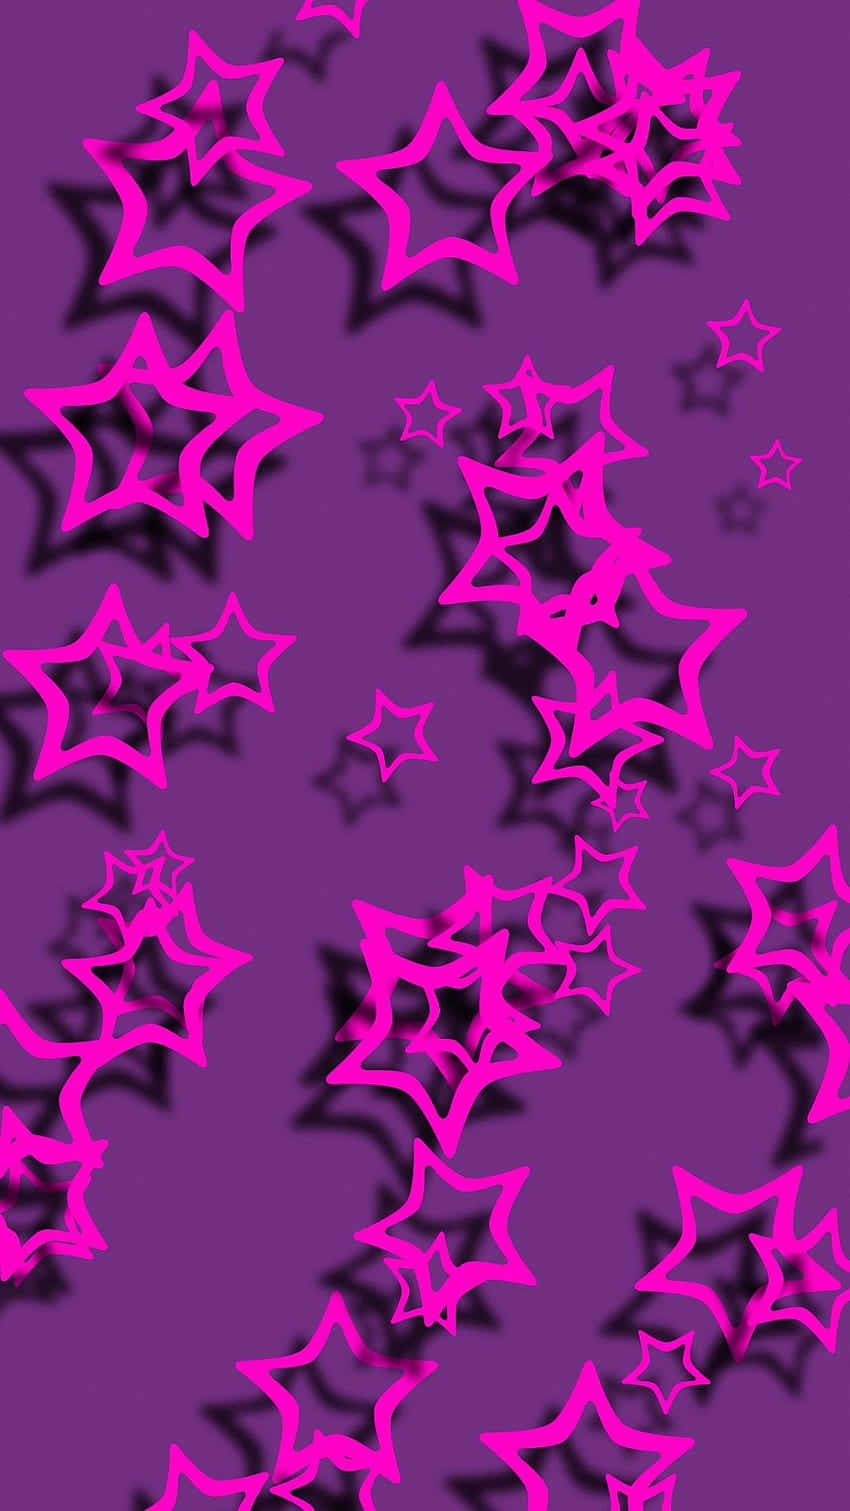 Estrelasfofas Em Rosa Neon E Roxo. Papel de Parede